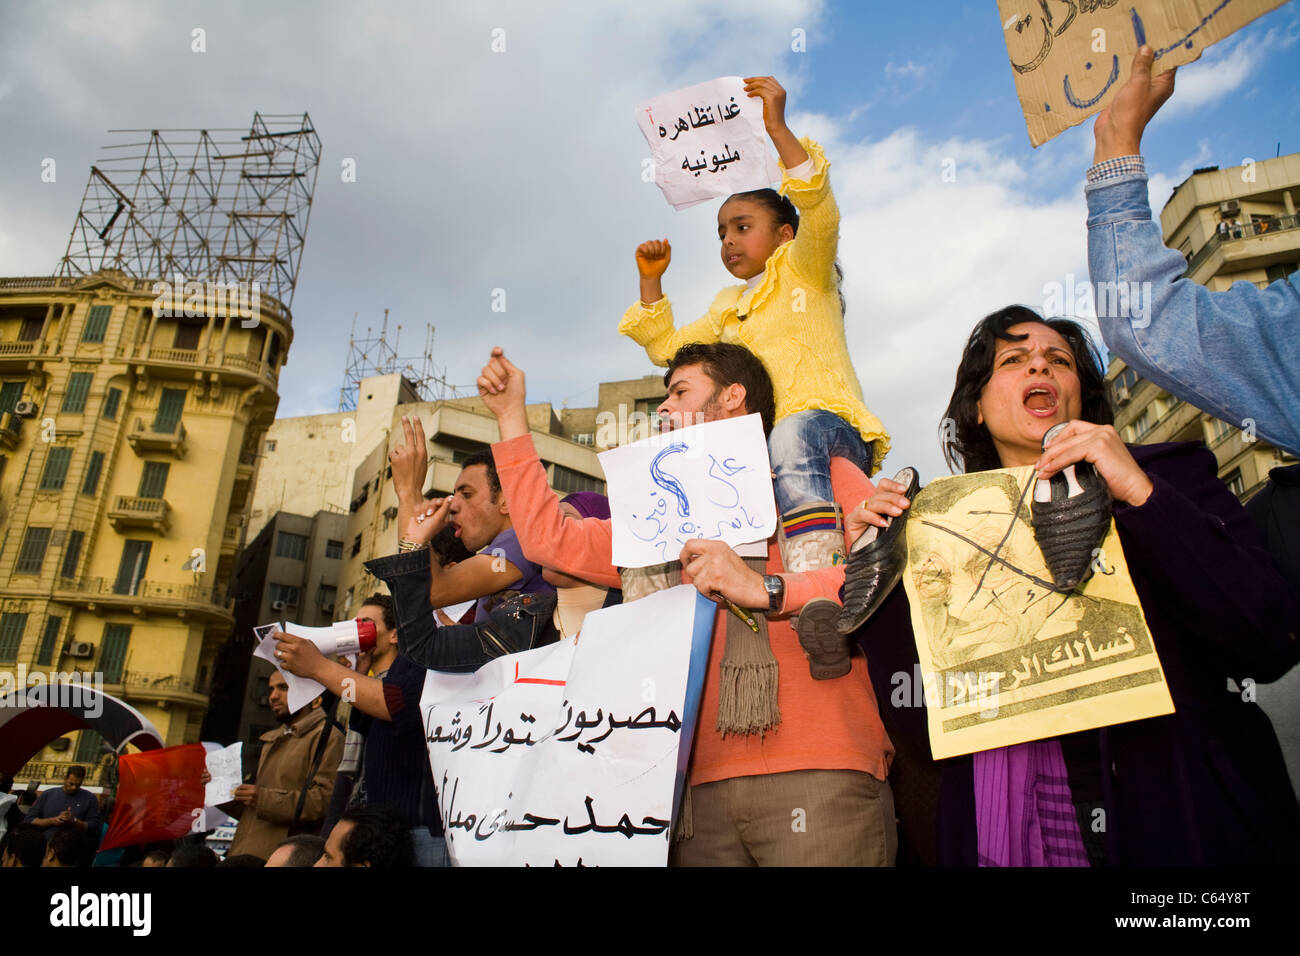 Les manifestants crier des slogans anti-gouvernementaux au cours de l'occupation de la place Tahrir au centre du Caire, l'Egypte le 31 janvier, 2011 Banque D'Images